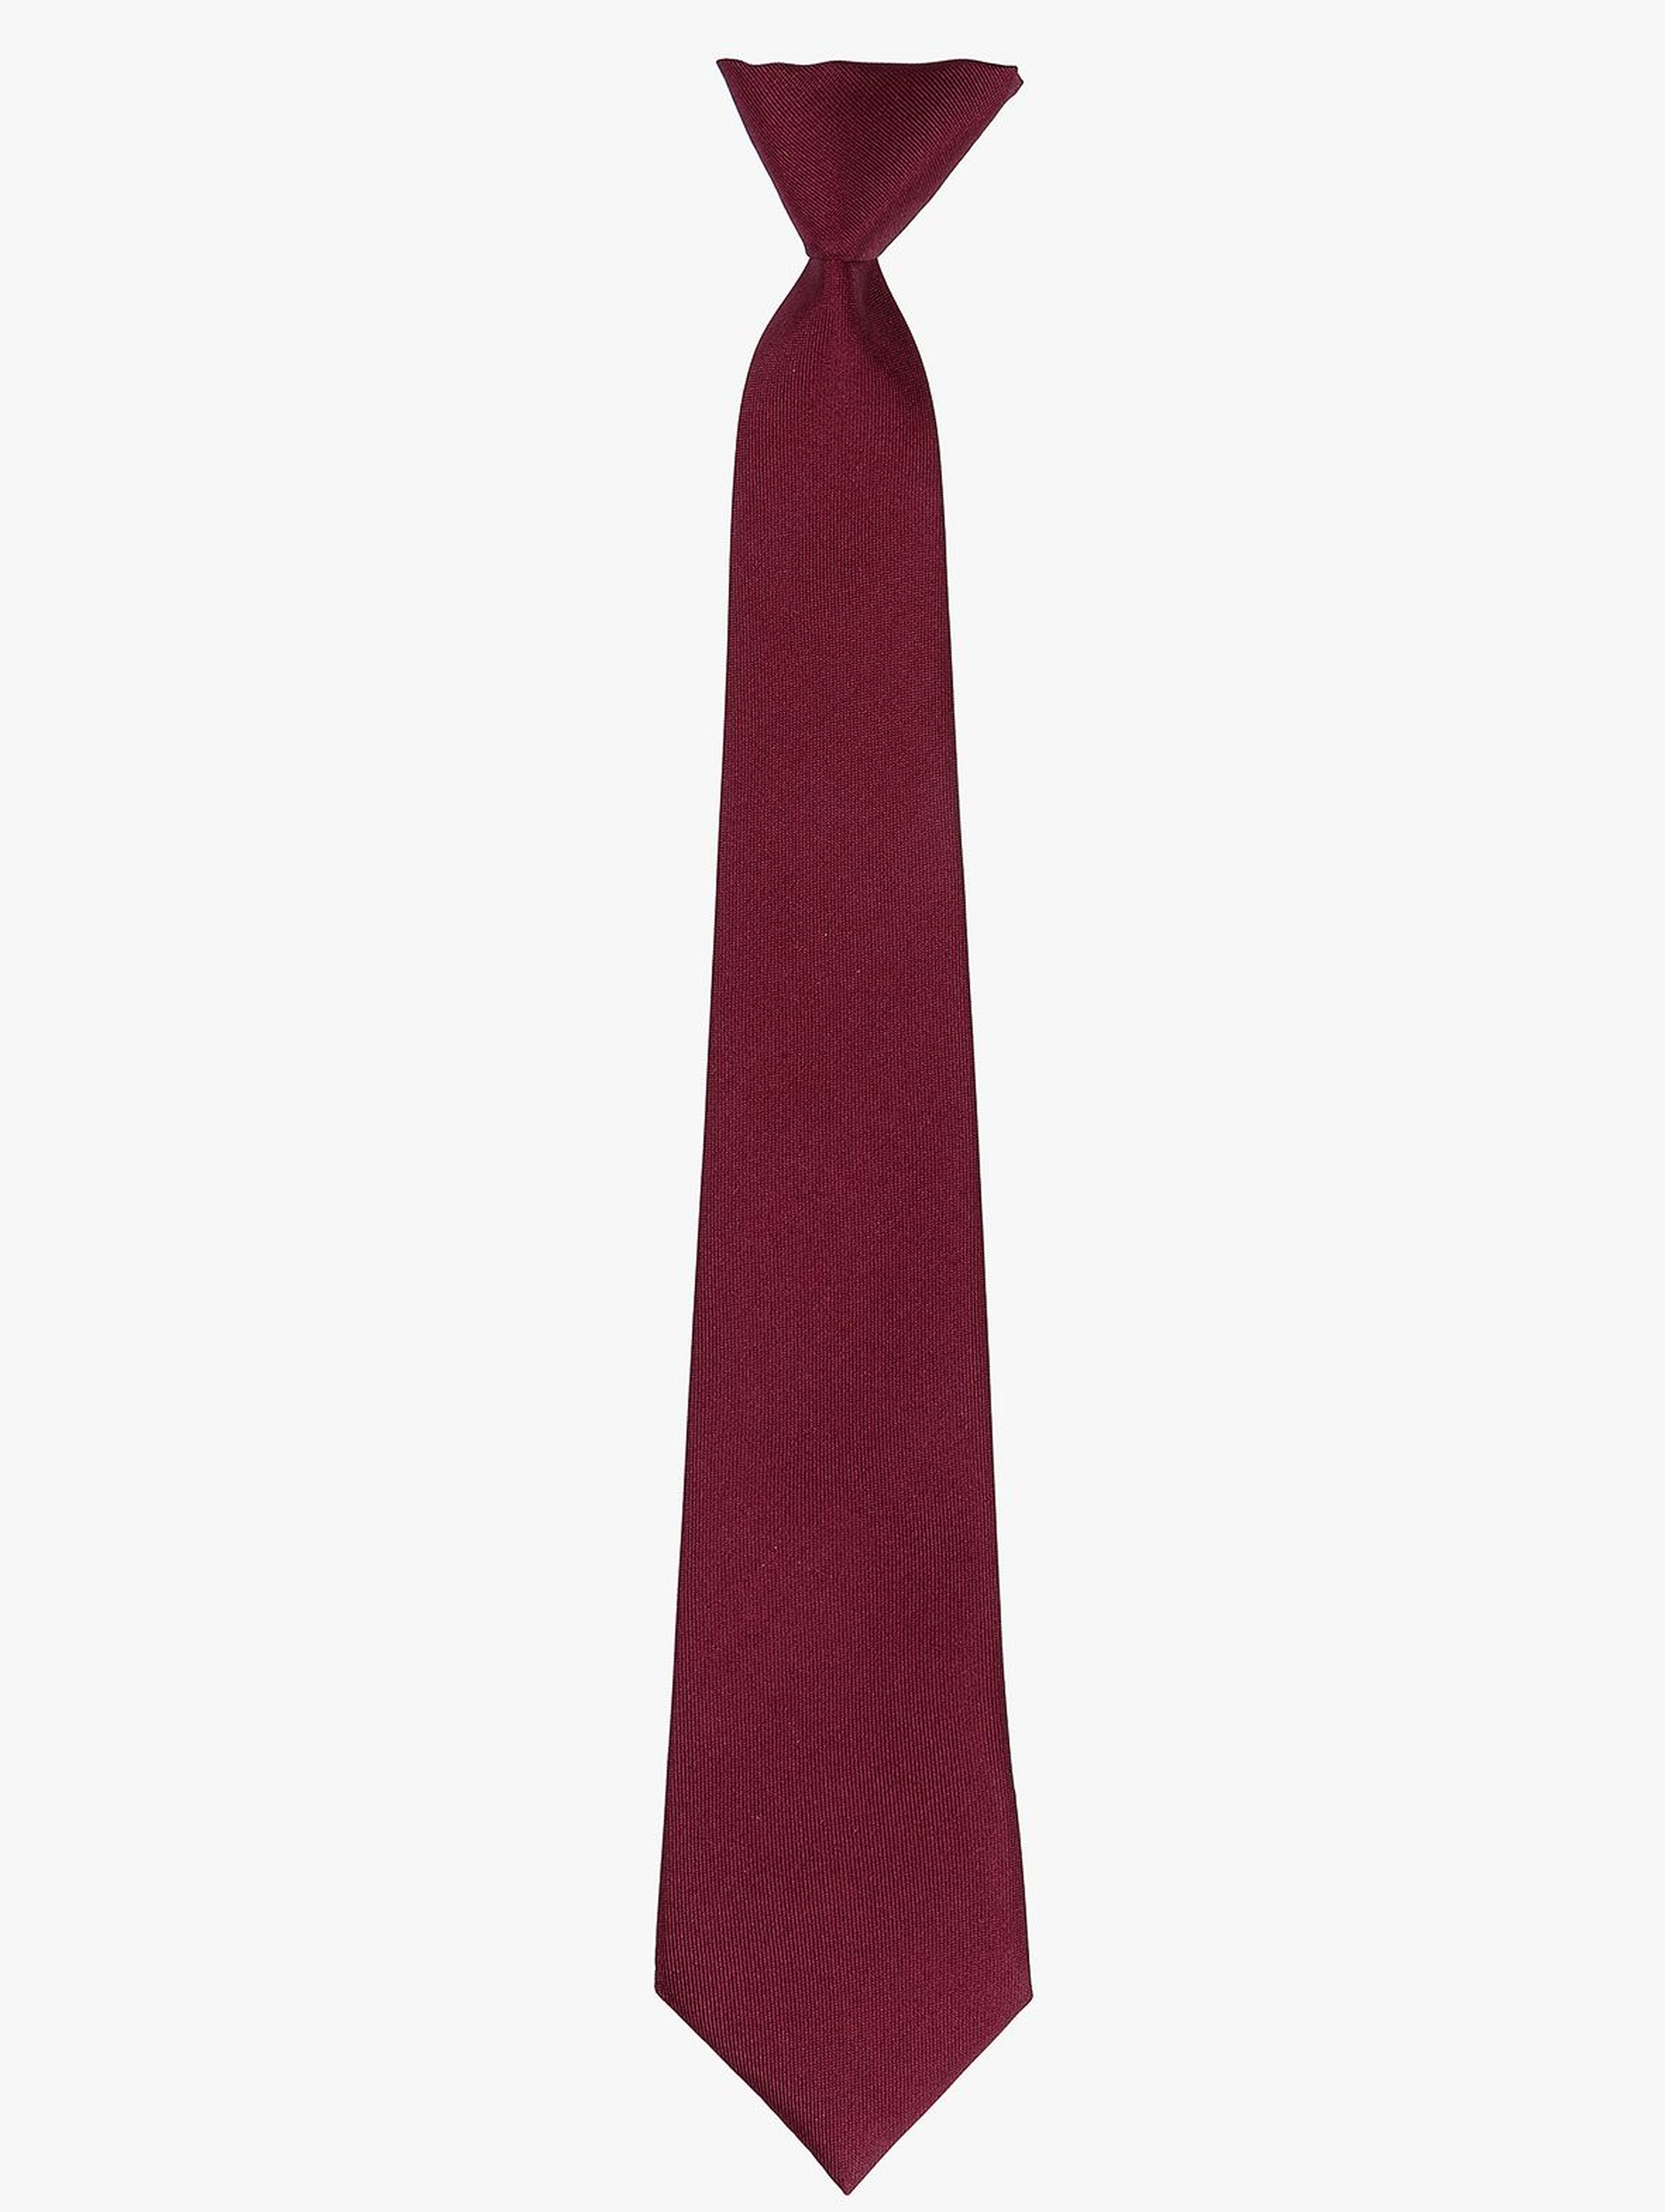 Krawat dla chłopca- bordowy